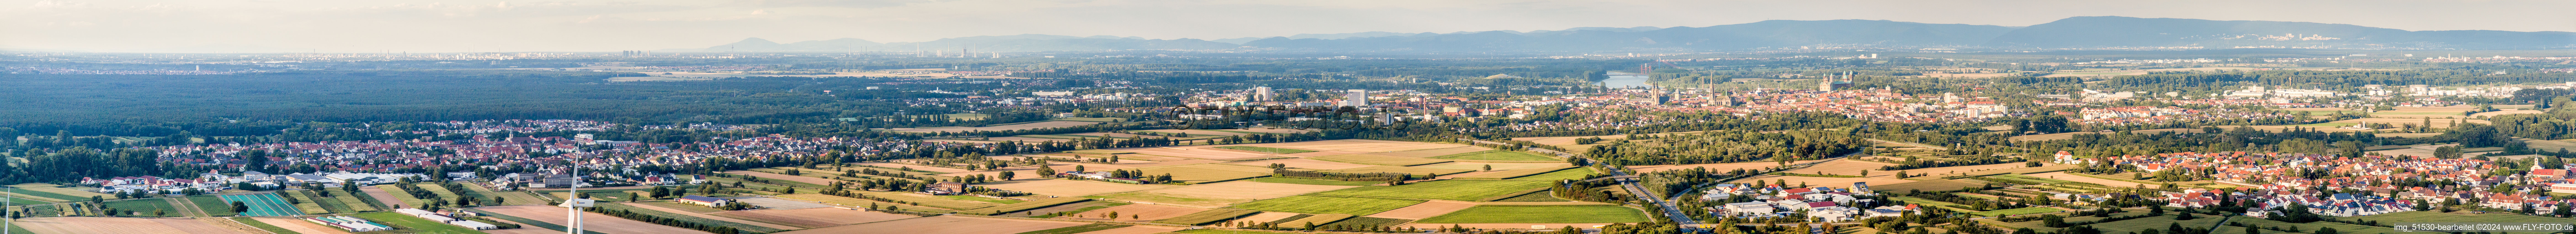 Panorama der Gesamtübersicht Stadtgebiet mit Außenbezirken in Speyer im Bundesland Rheinland-Pfalz, Deutschland